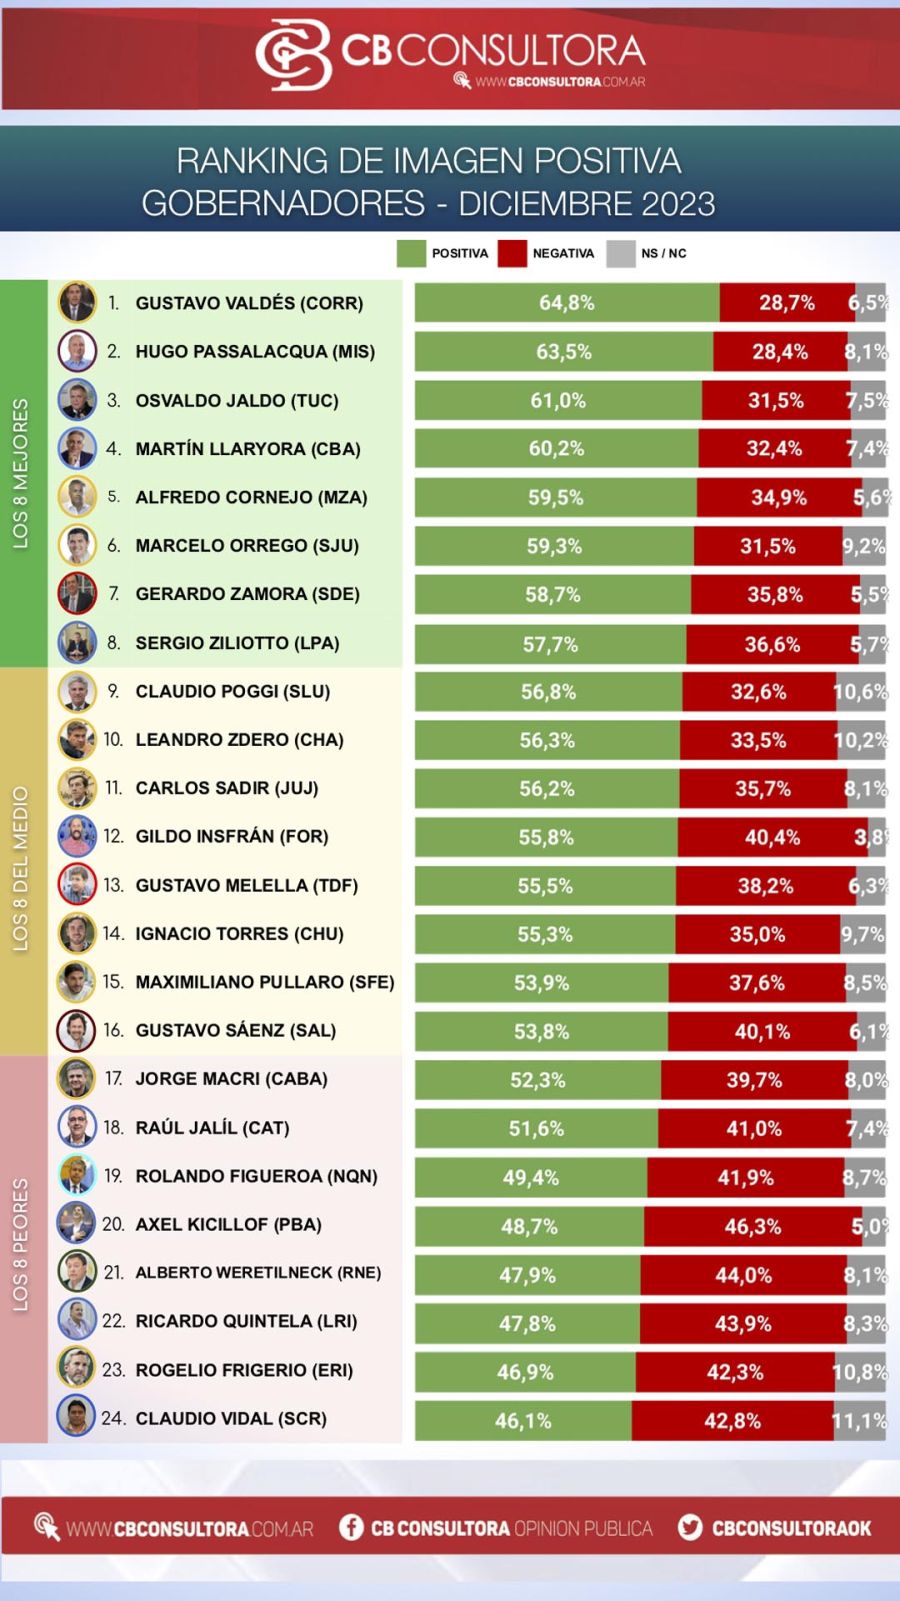 Ranking de gobernadores